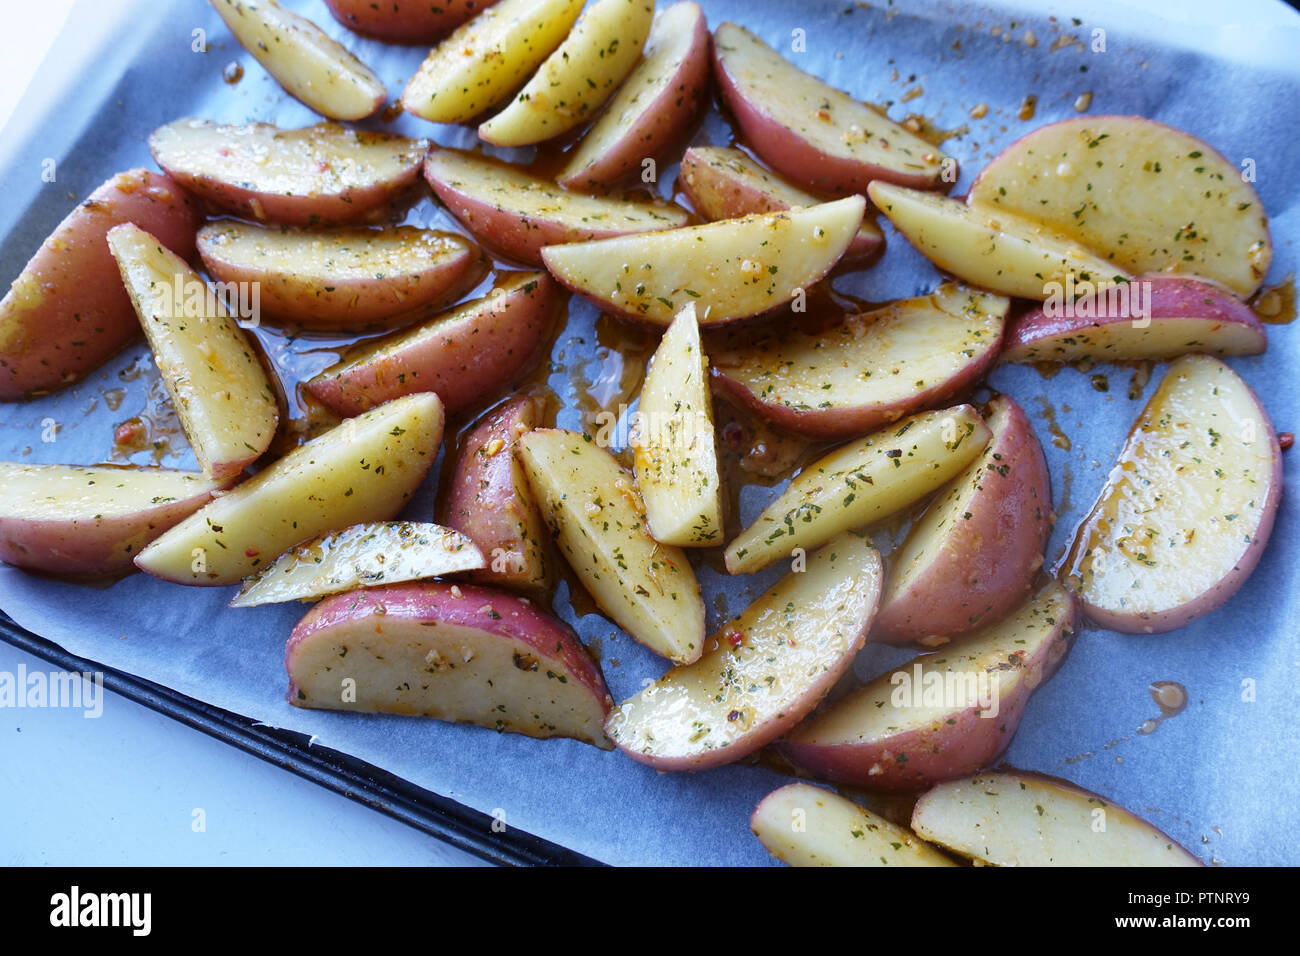 Rodajas de patata cruda sobre la bandeja para hornear. Foto de stock